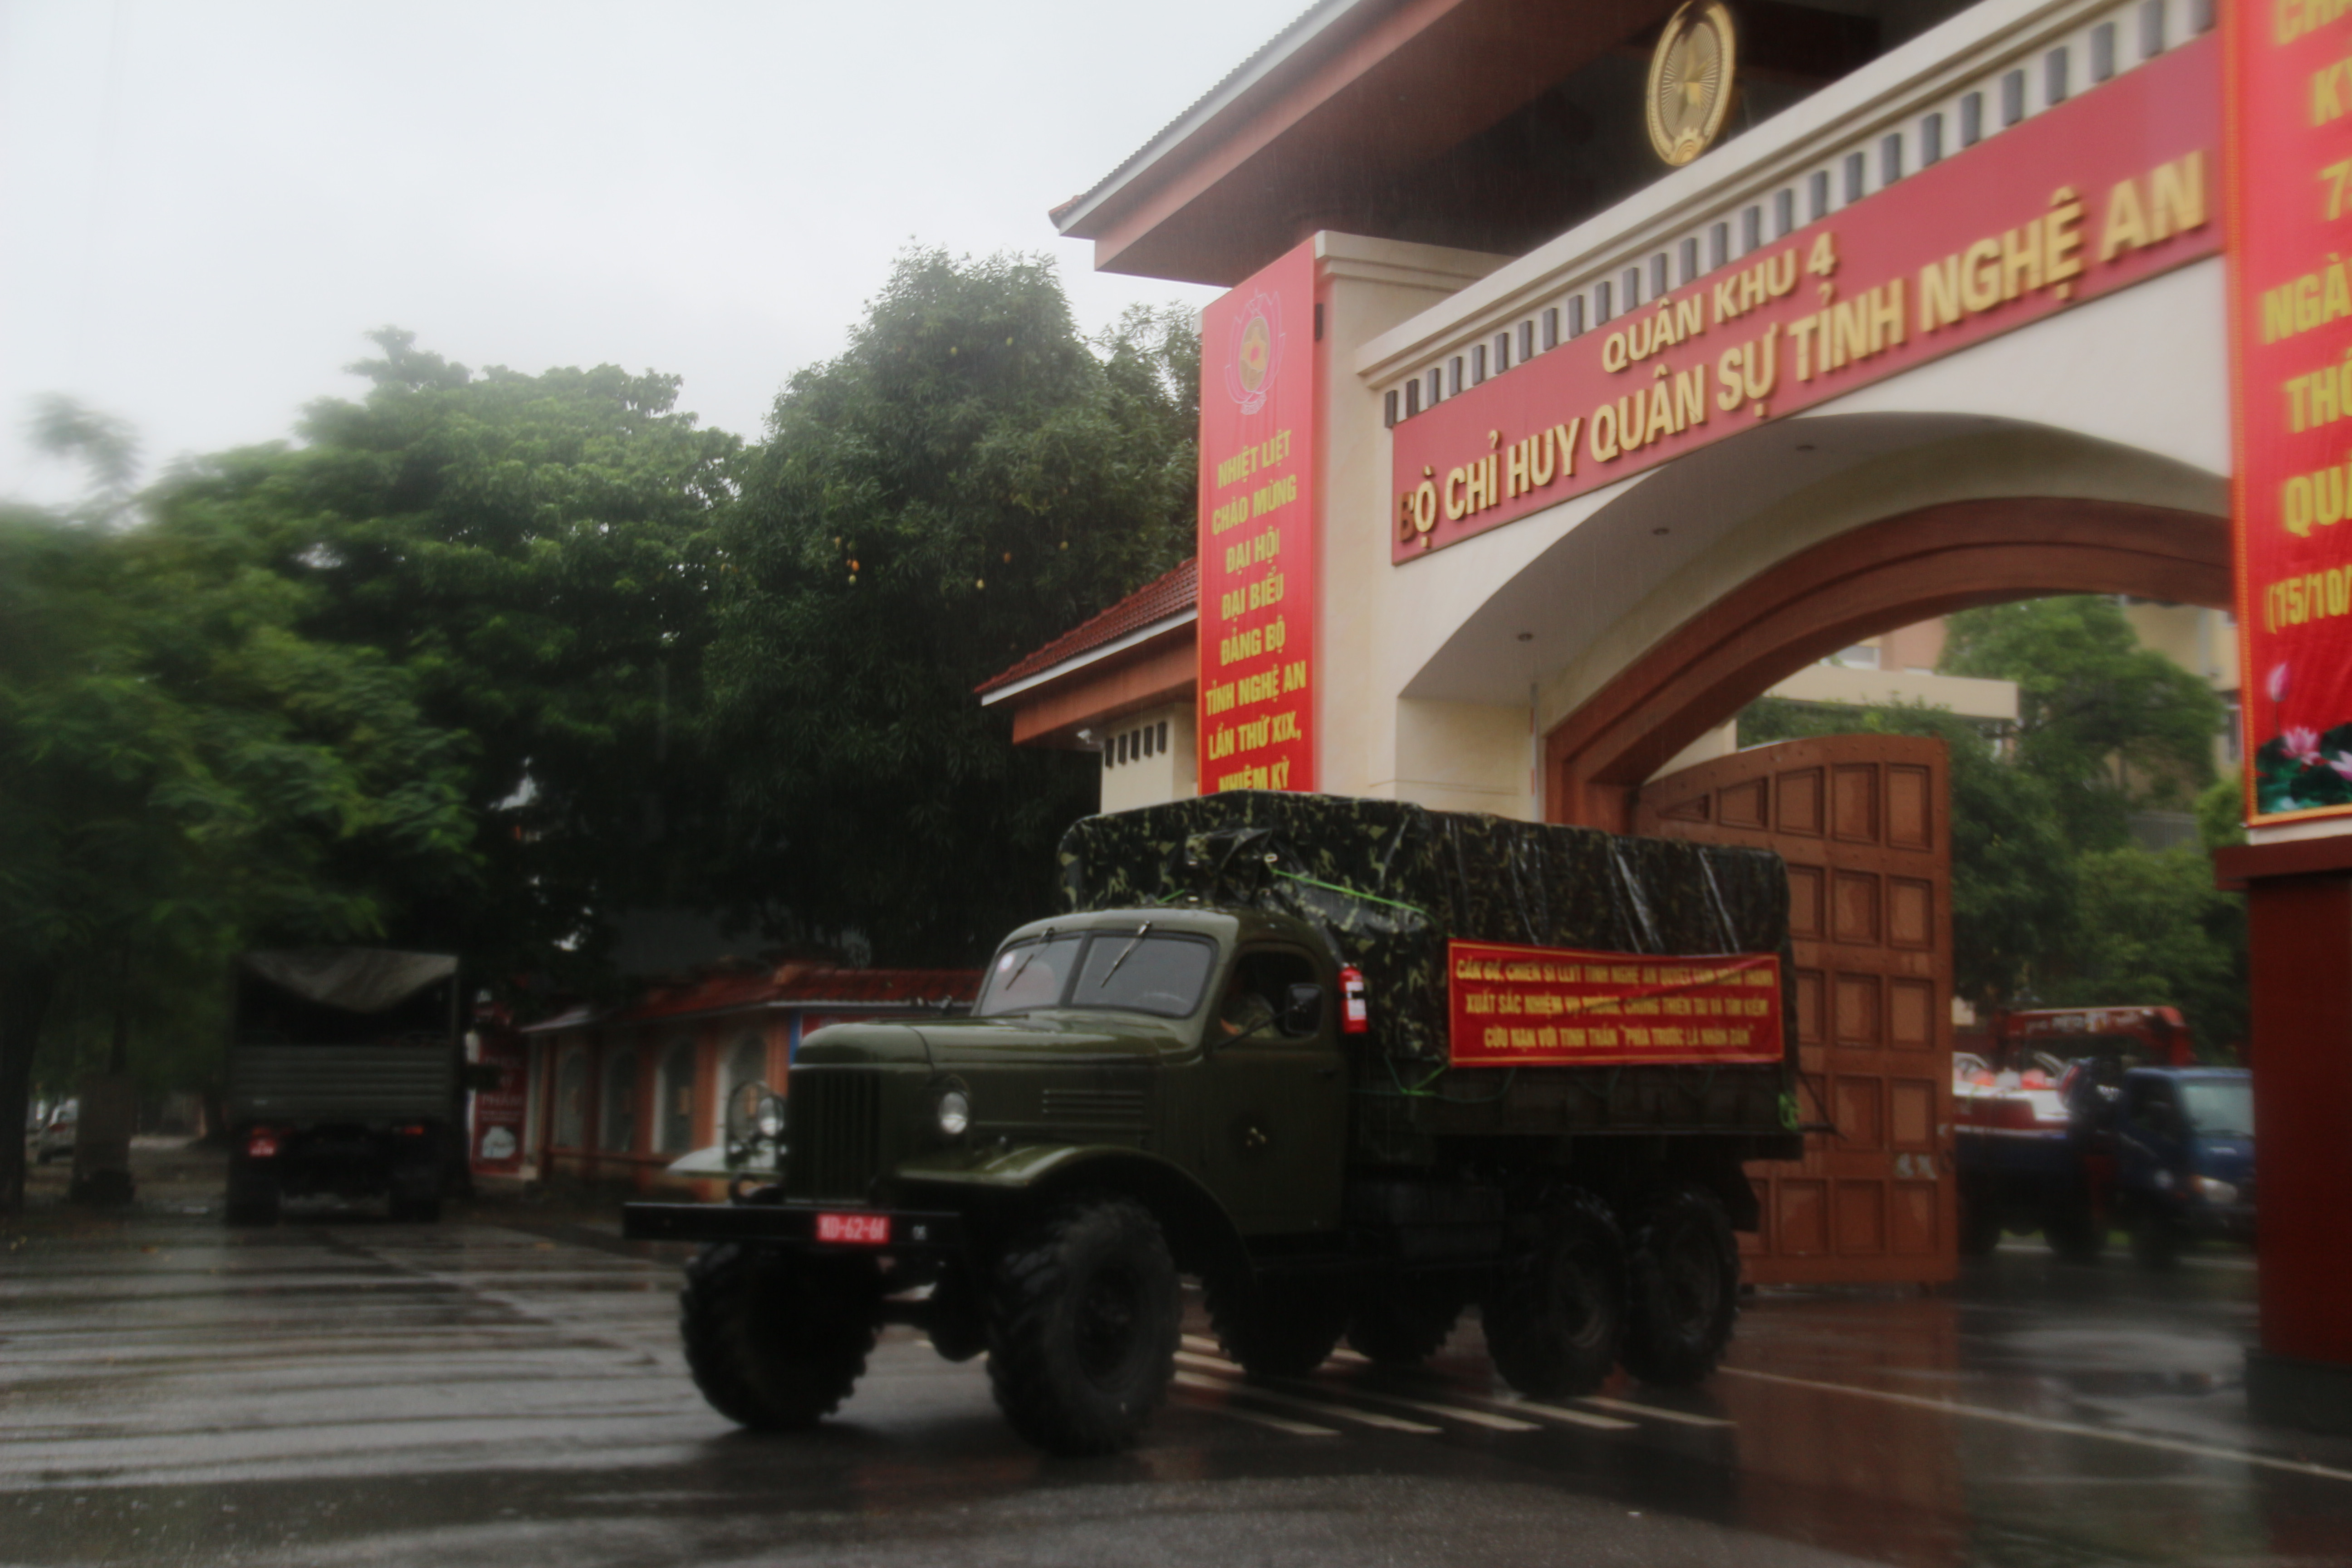 Đoàn công tác của Bộ CHQS tỉnh Nghệ An lên đường làm nhiệm vụ. 